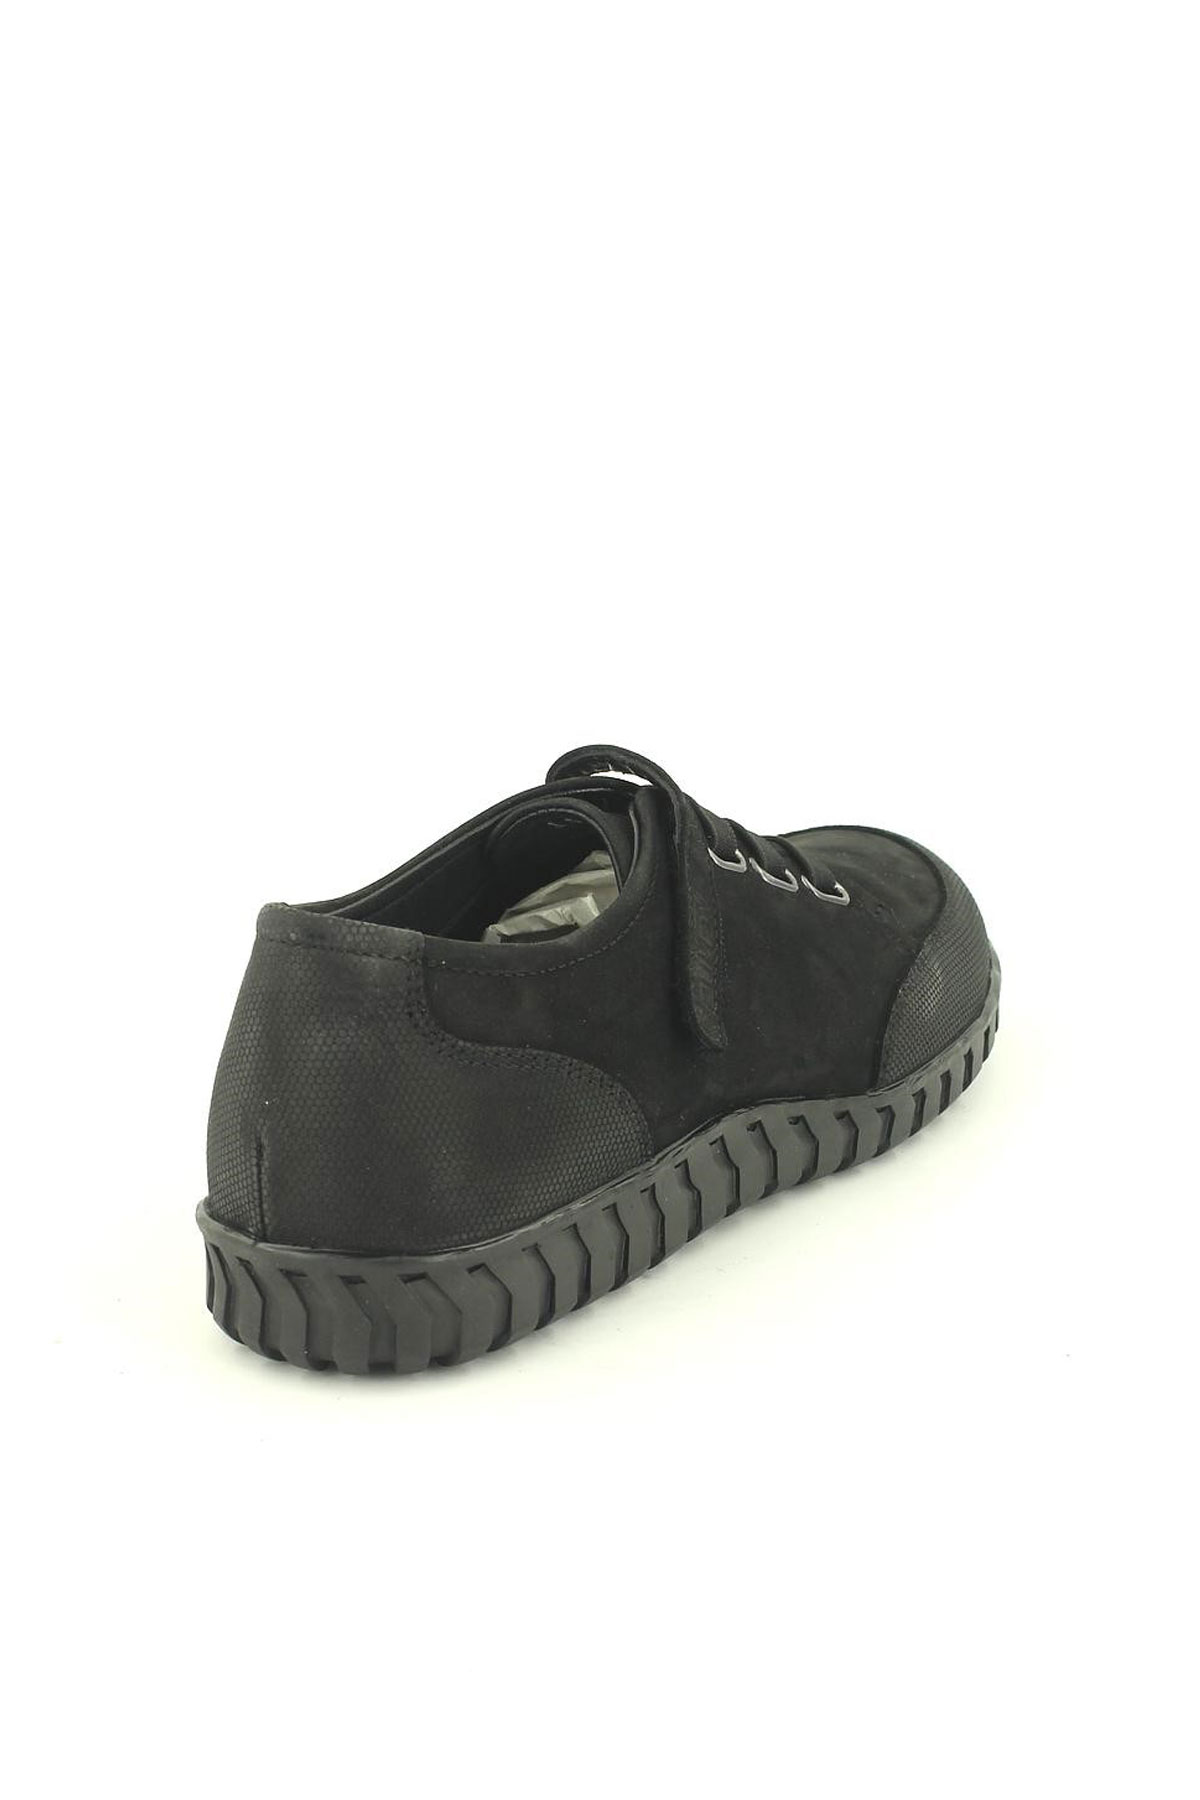 Kadın Comfort Deri Ayakkabı Siyah 2050804K - Thumbnail